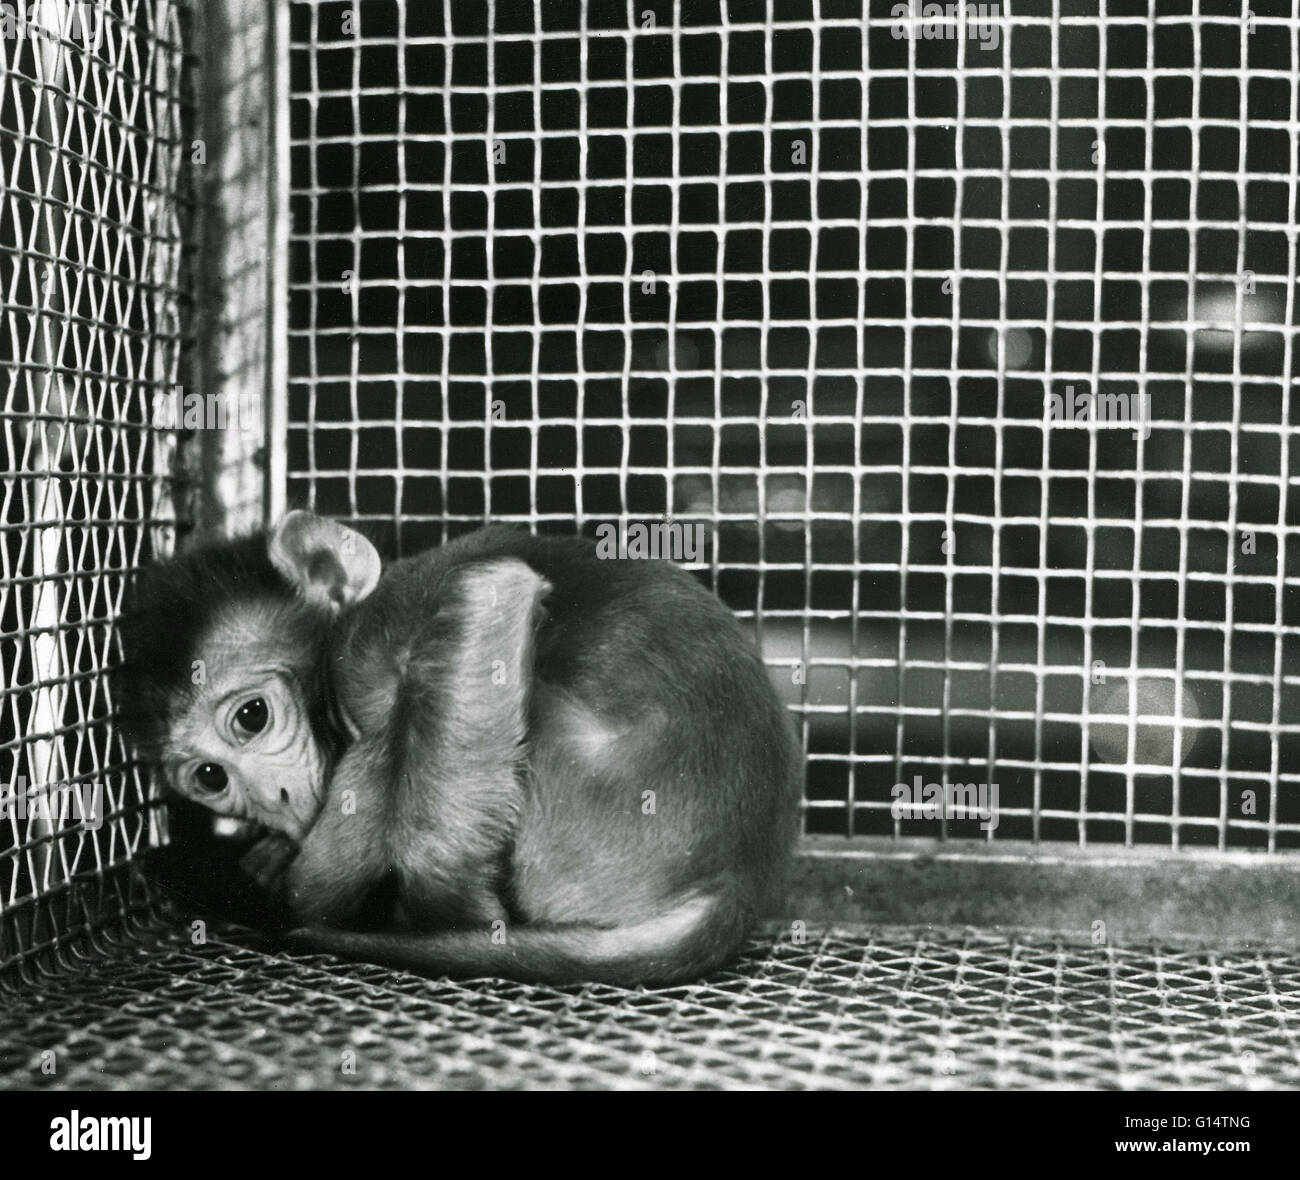 Un neonato di scimmia Rhesus (macaca mulatta) in una gabbia durante un esperimento sugli animali. Privazione materna esperimenti eseguiti da Harry Harlow dell'Università del Wisconsin negli anni cinquanta coinvolti la separazione di scimmie nascenti dalle loro madri e allevamento di loro Foto Stock